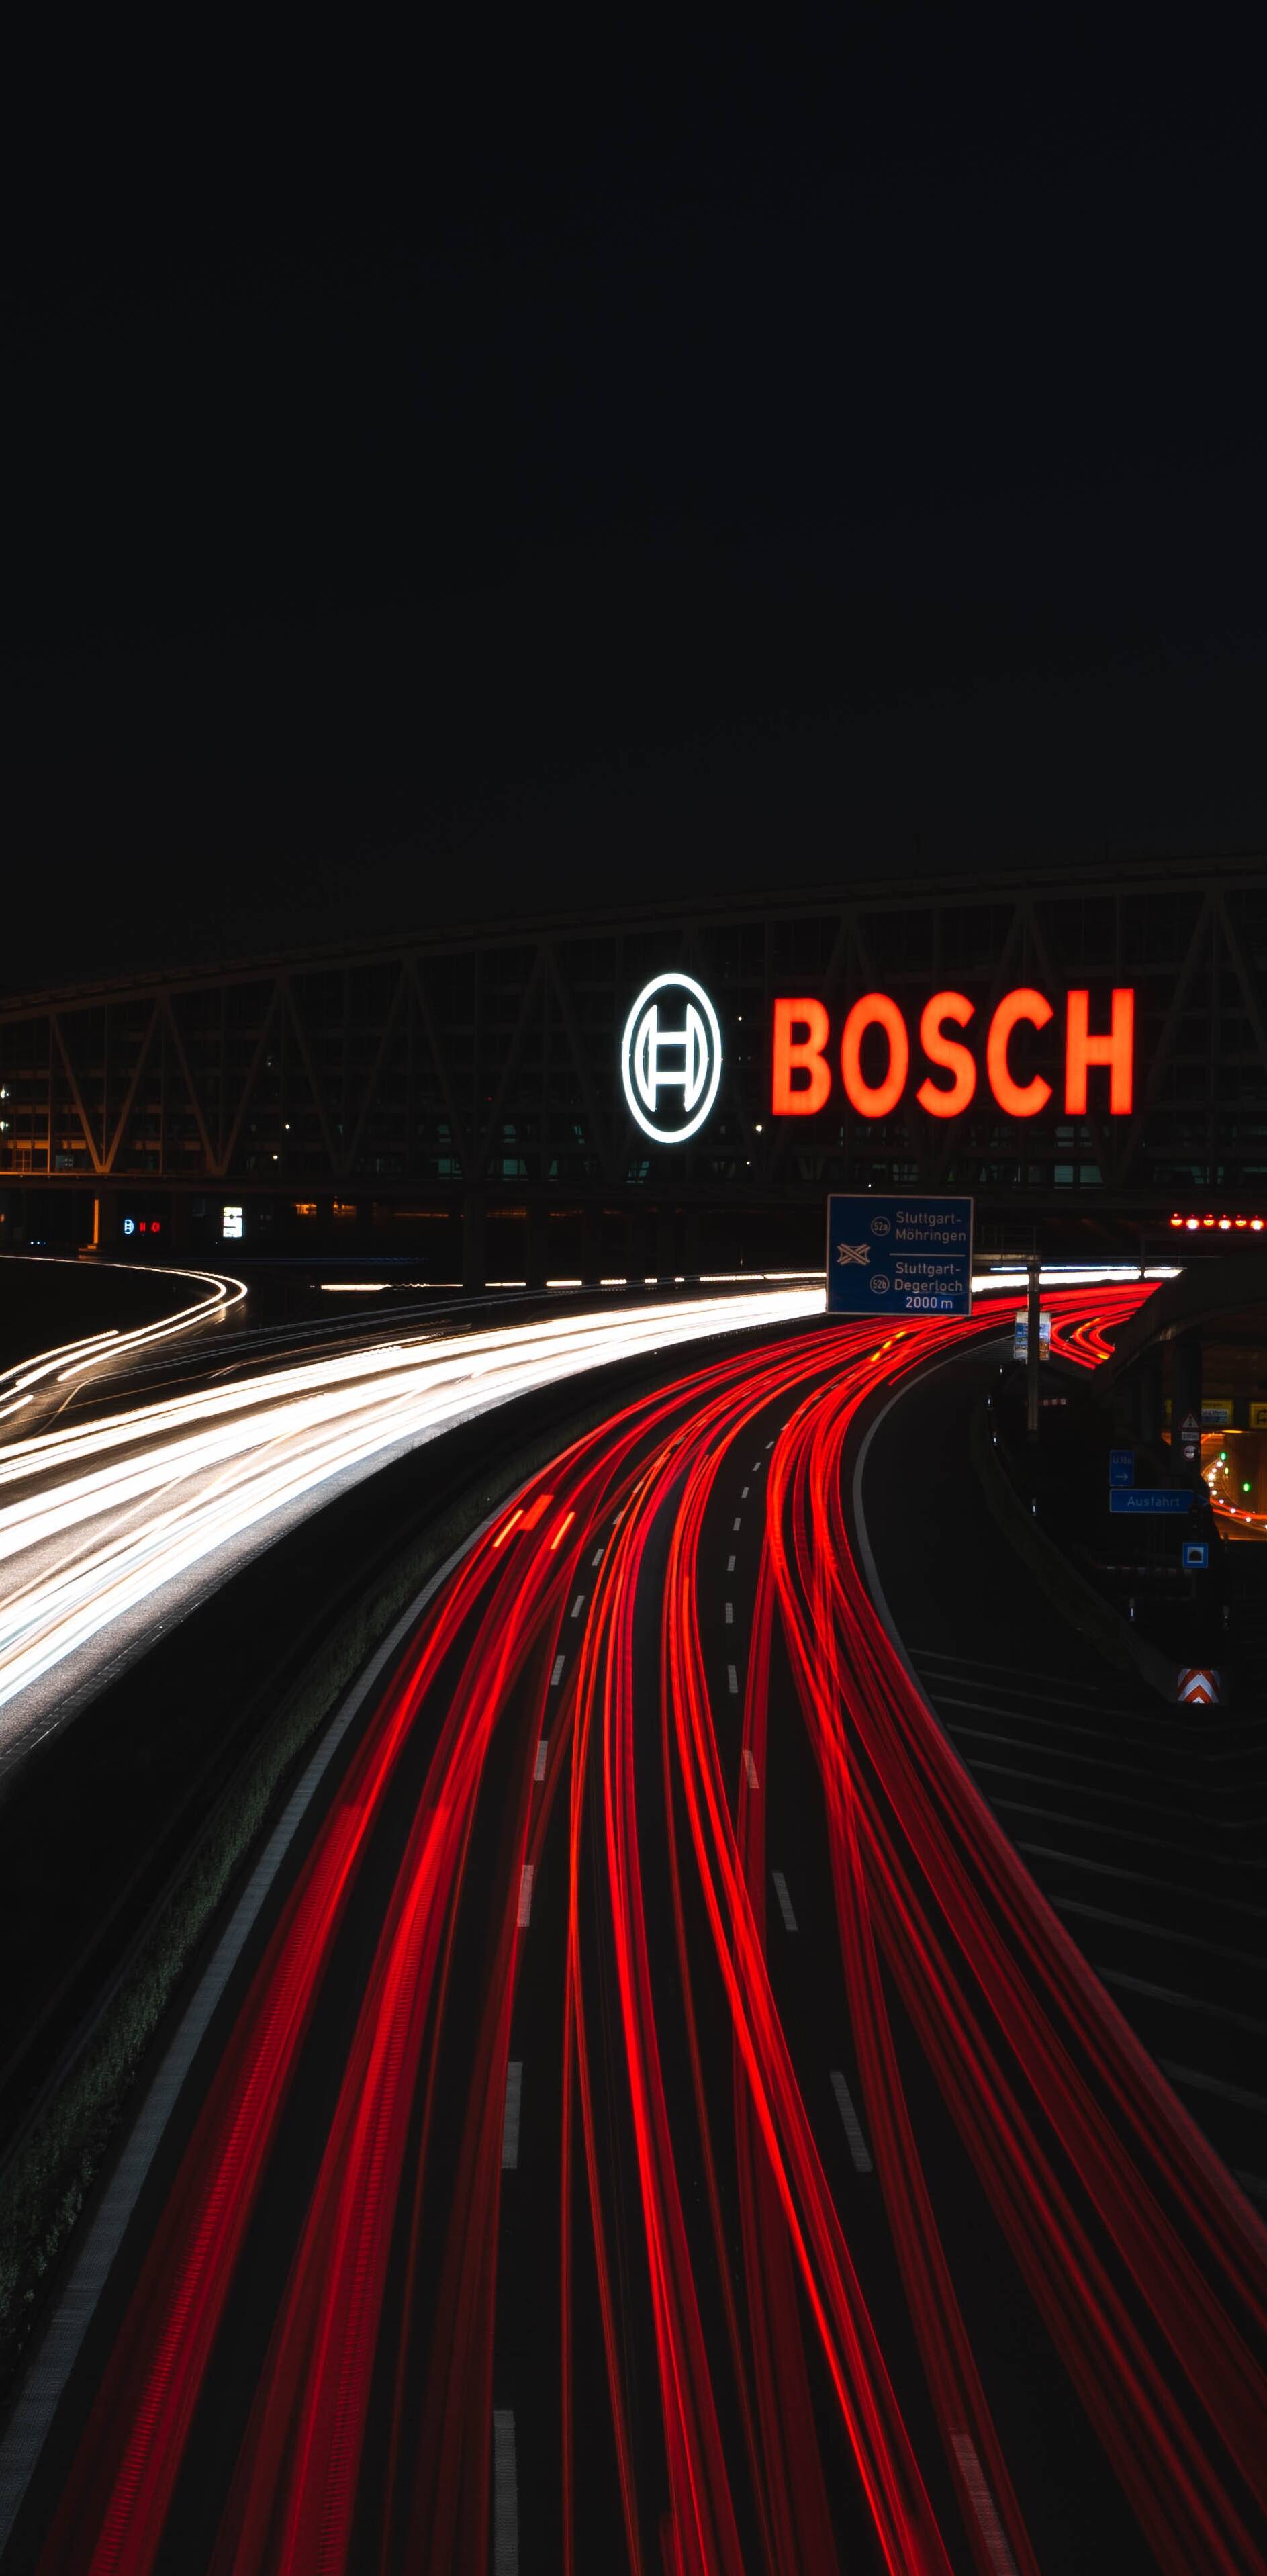 Aragonès assegura que dedicarà "tot l'esforç" a defensar els llocs de treball de la planta de Bosch a Lliçà d'Amunt